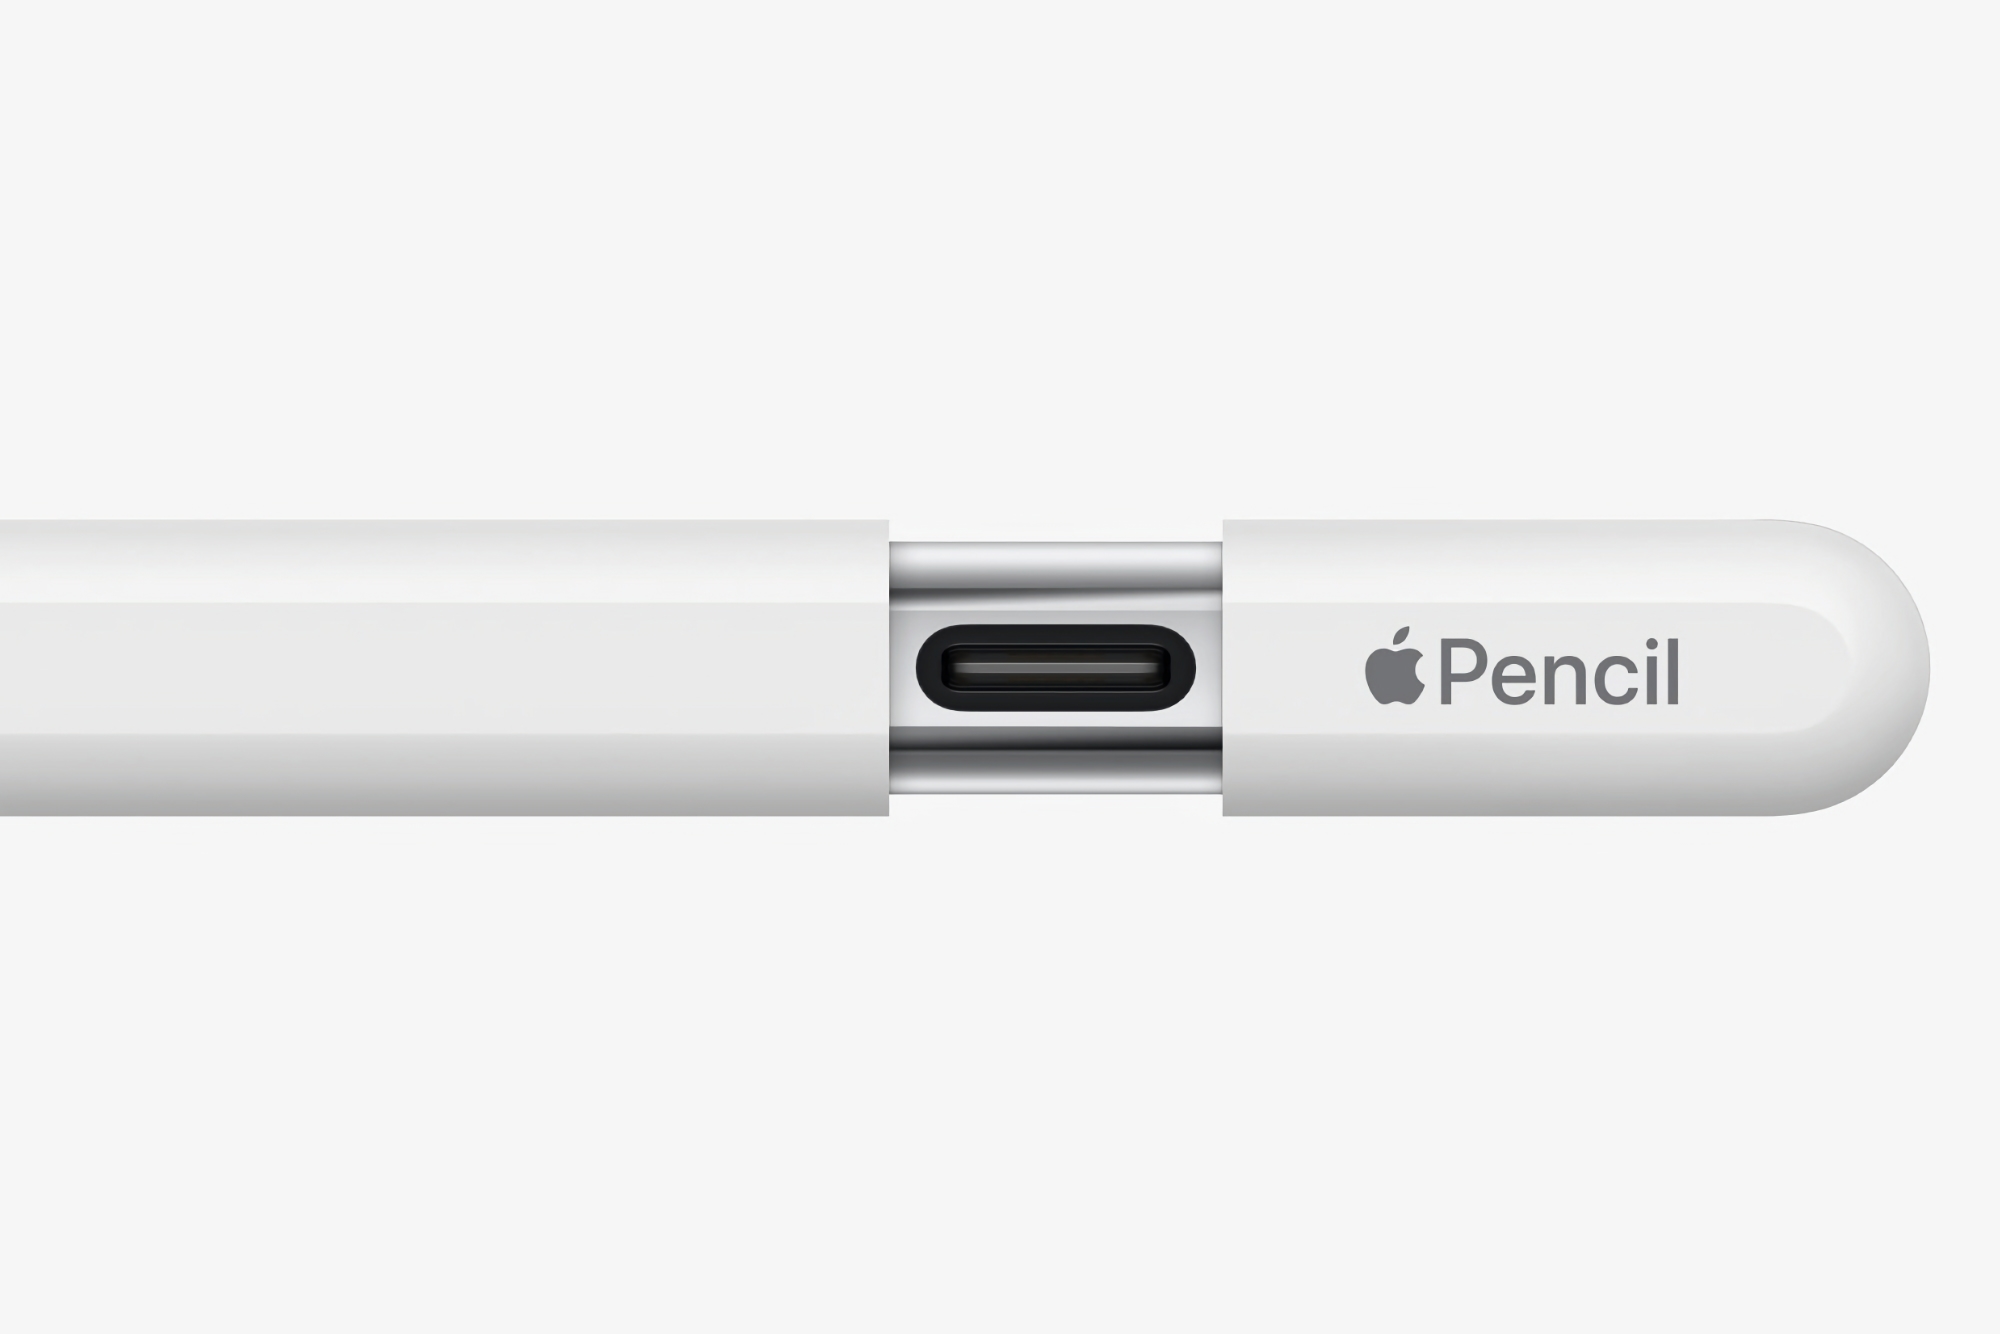 Apple випустила нову прошивку для Apple Pencil з USB-C